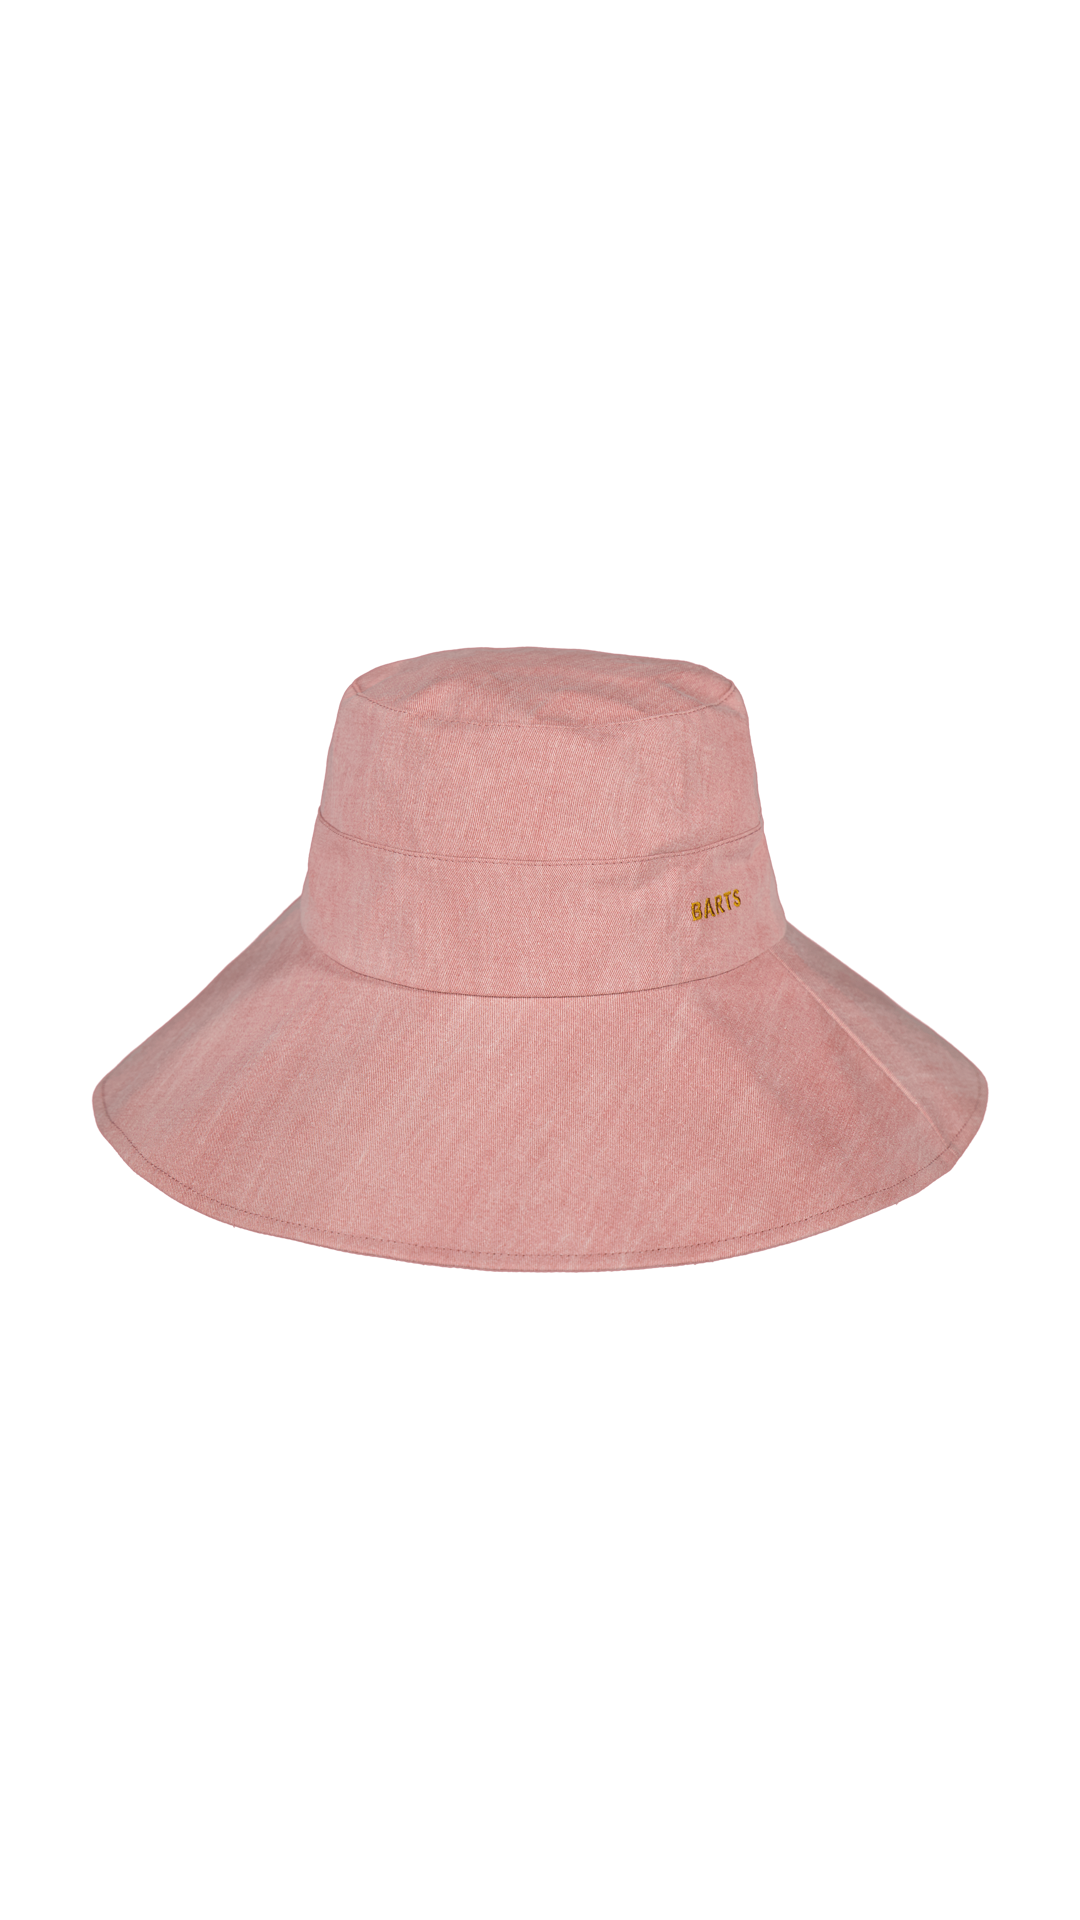 BARTS Hamutan Hat pink at BARTS now - Order